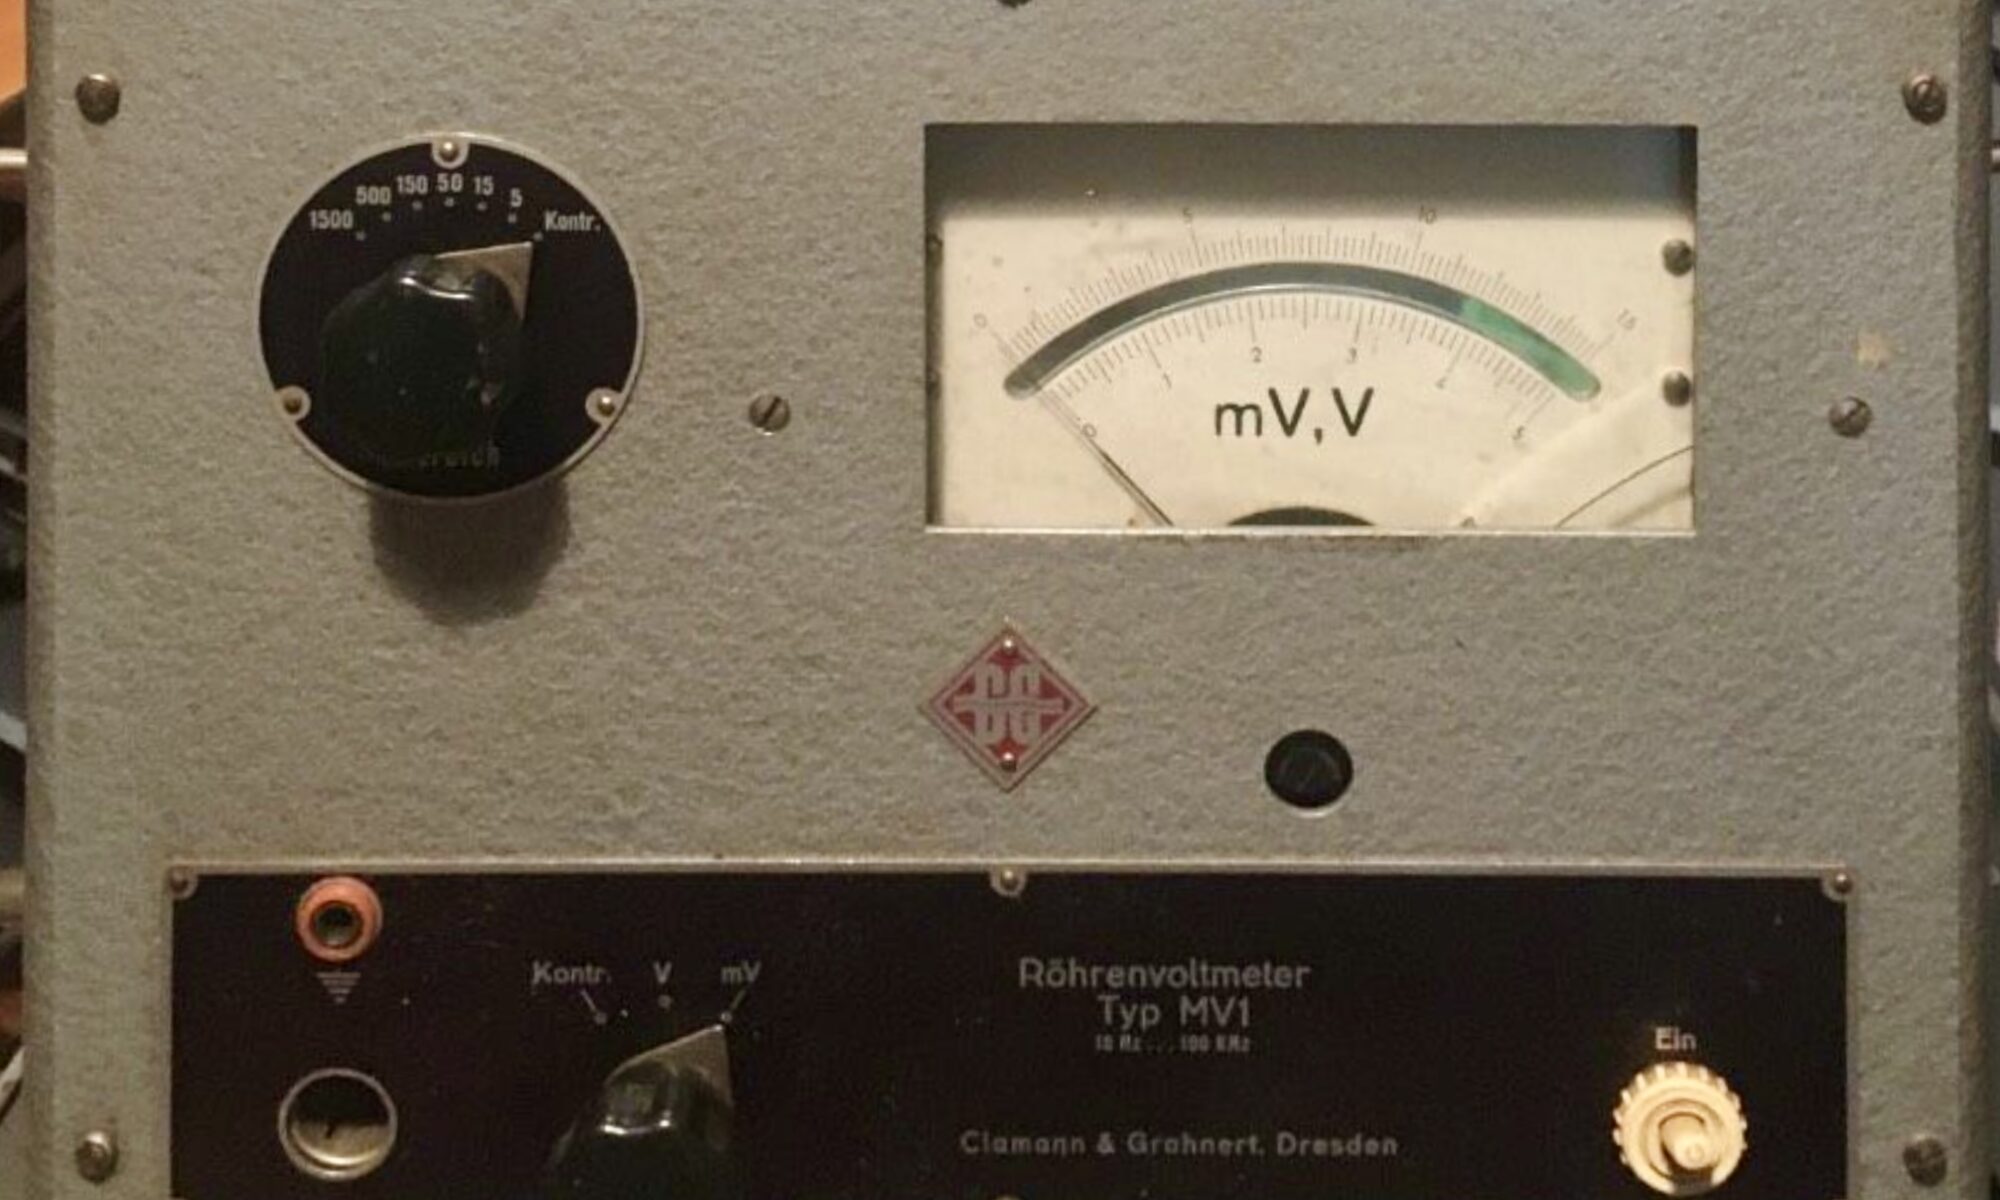 Röhrenvoltmeter MV1